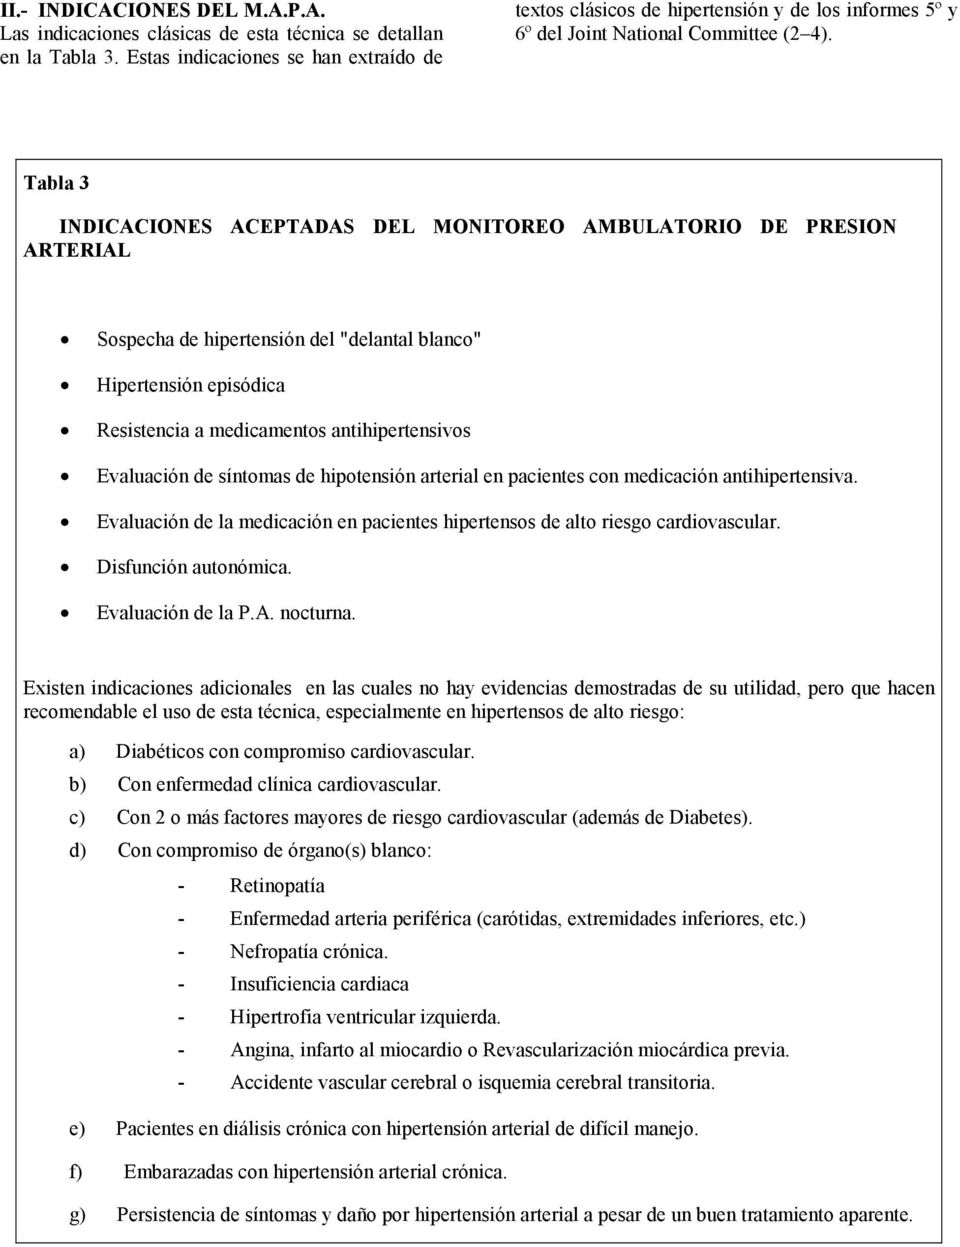 Tabla 3 INDICACIONES ACEPTADAS DEL MONITOREO AMBULATORIO DE PRESION ARTERIAL Sospecha de hipertensión del "delantal blanco" Hipertensión episódica Resistencia a medicamentos antihipertensivos